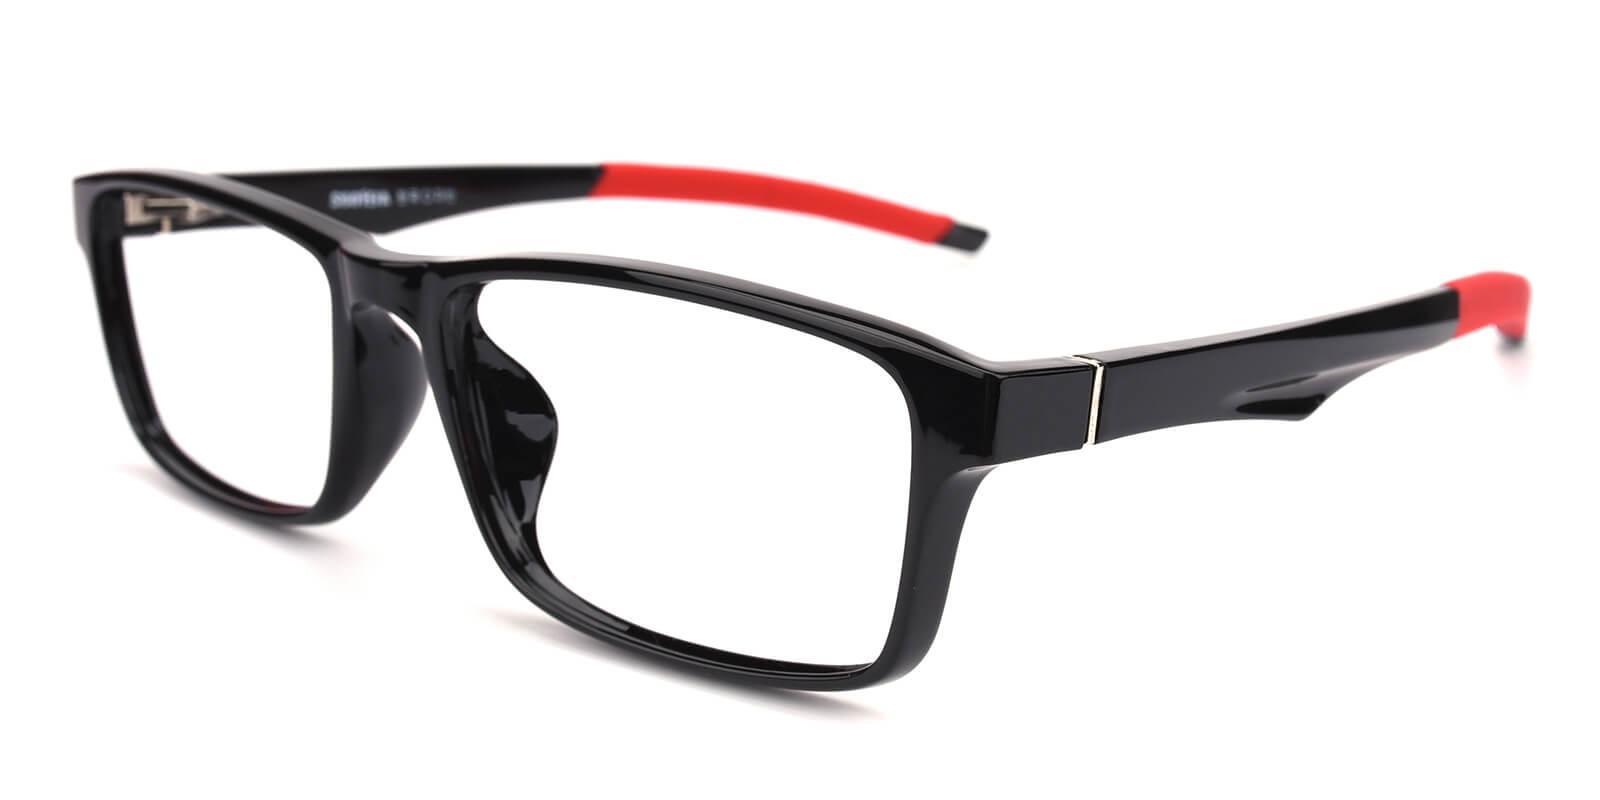 Arctic Black TR Eyeglasses , SportsGlasses , UniversalBridgeFit Frames from ABBE Glasses